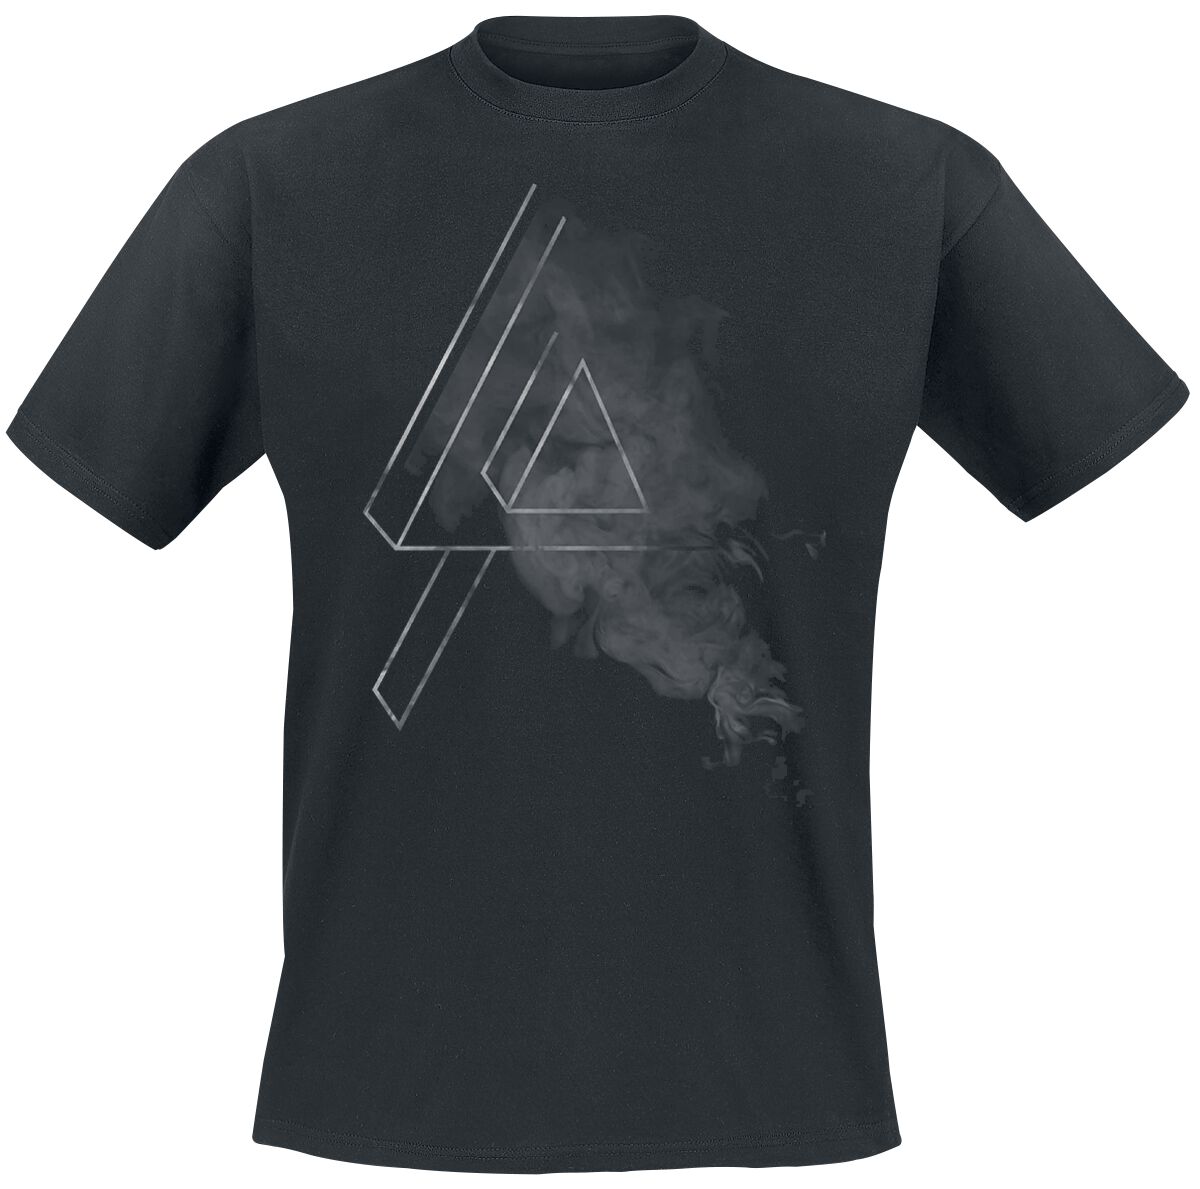 Linkin Park T-Shirt - Smoke Logo - S bis 5XL - für Männer - Größe 4XL - schwarz  - EMP exklusives Merchandise!